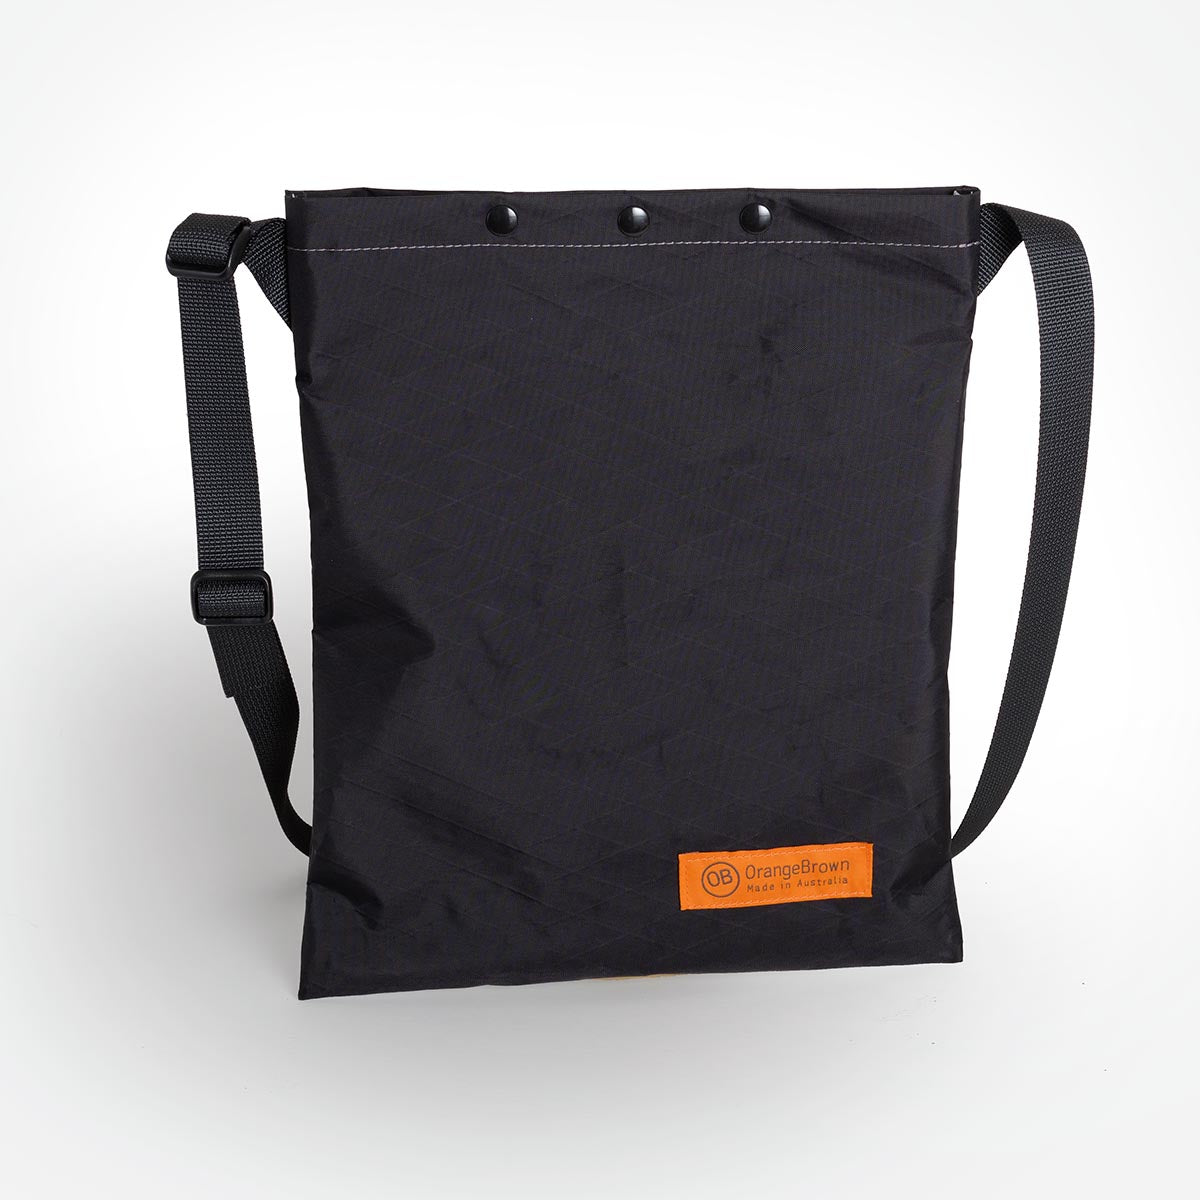 A black sling bag made by OrangeBrown in Australia.